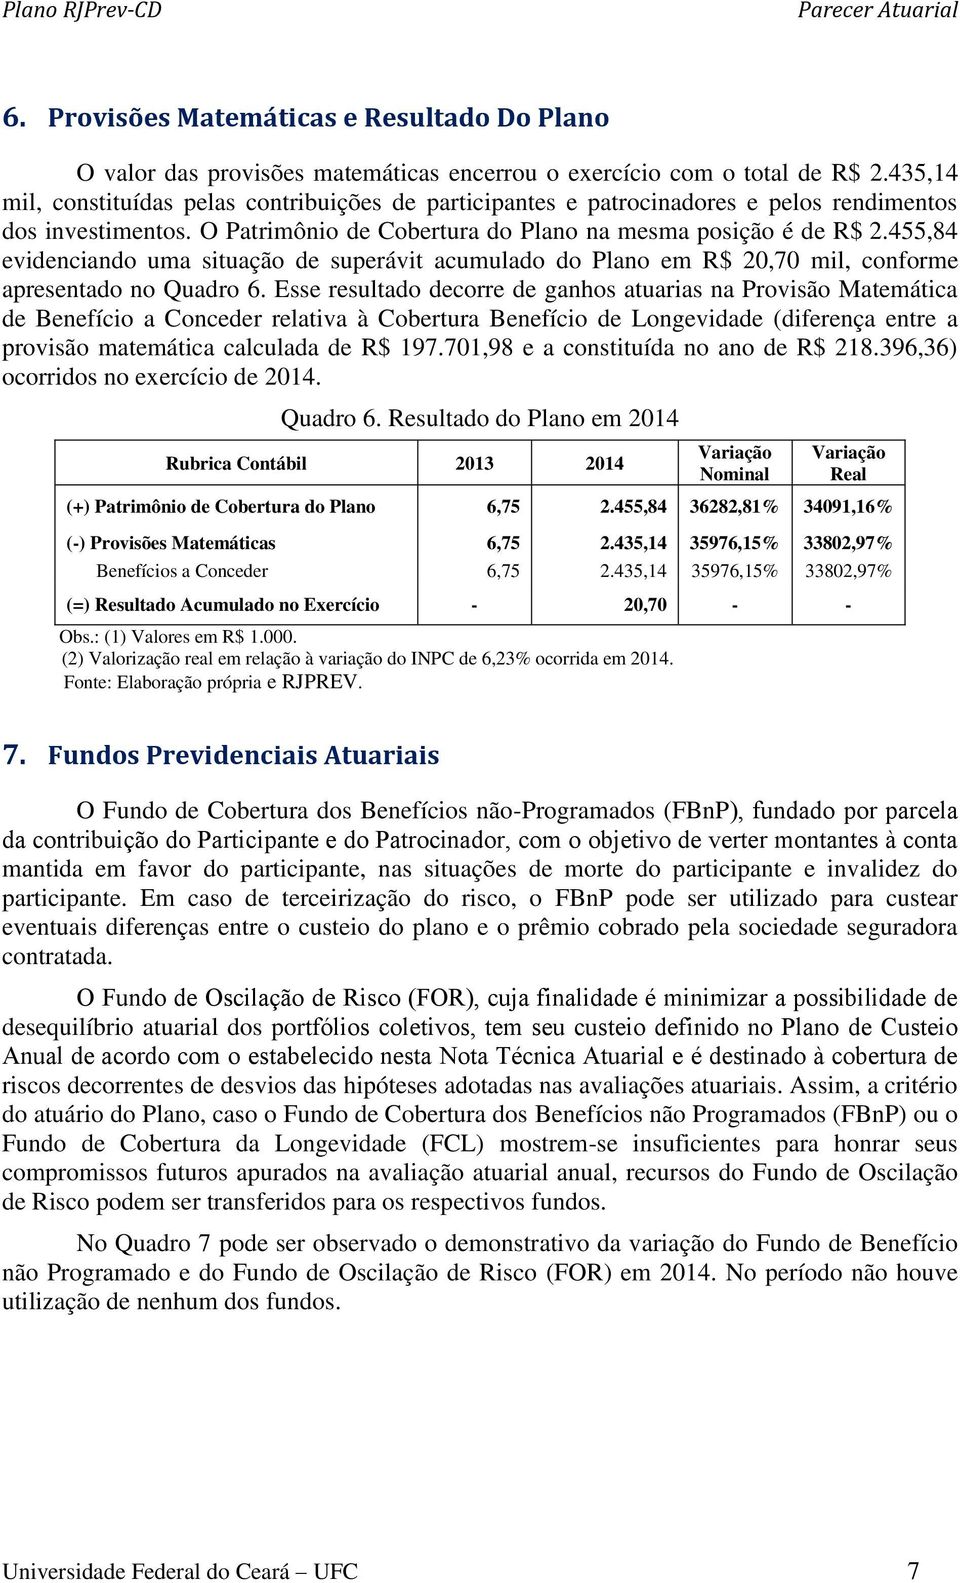 455,84 evidenciando uma situação de superávit acumulado do Plano em R$ 20,70 mil, conforme apresentado no Quadro 6.